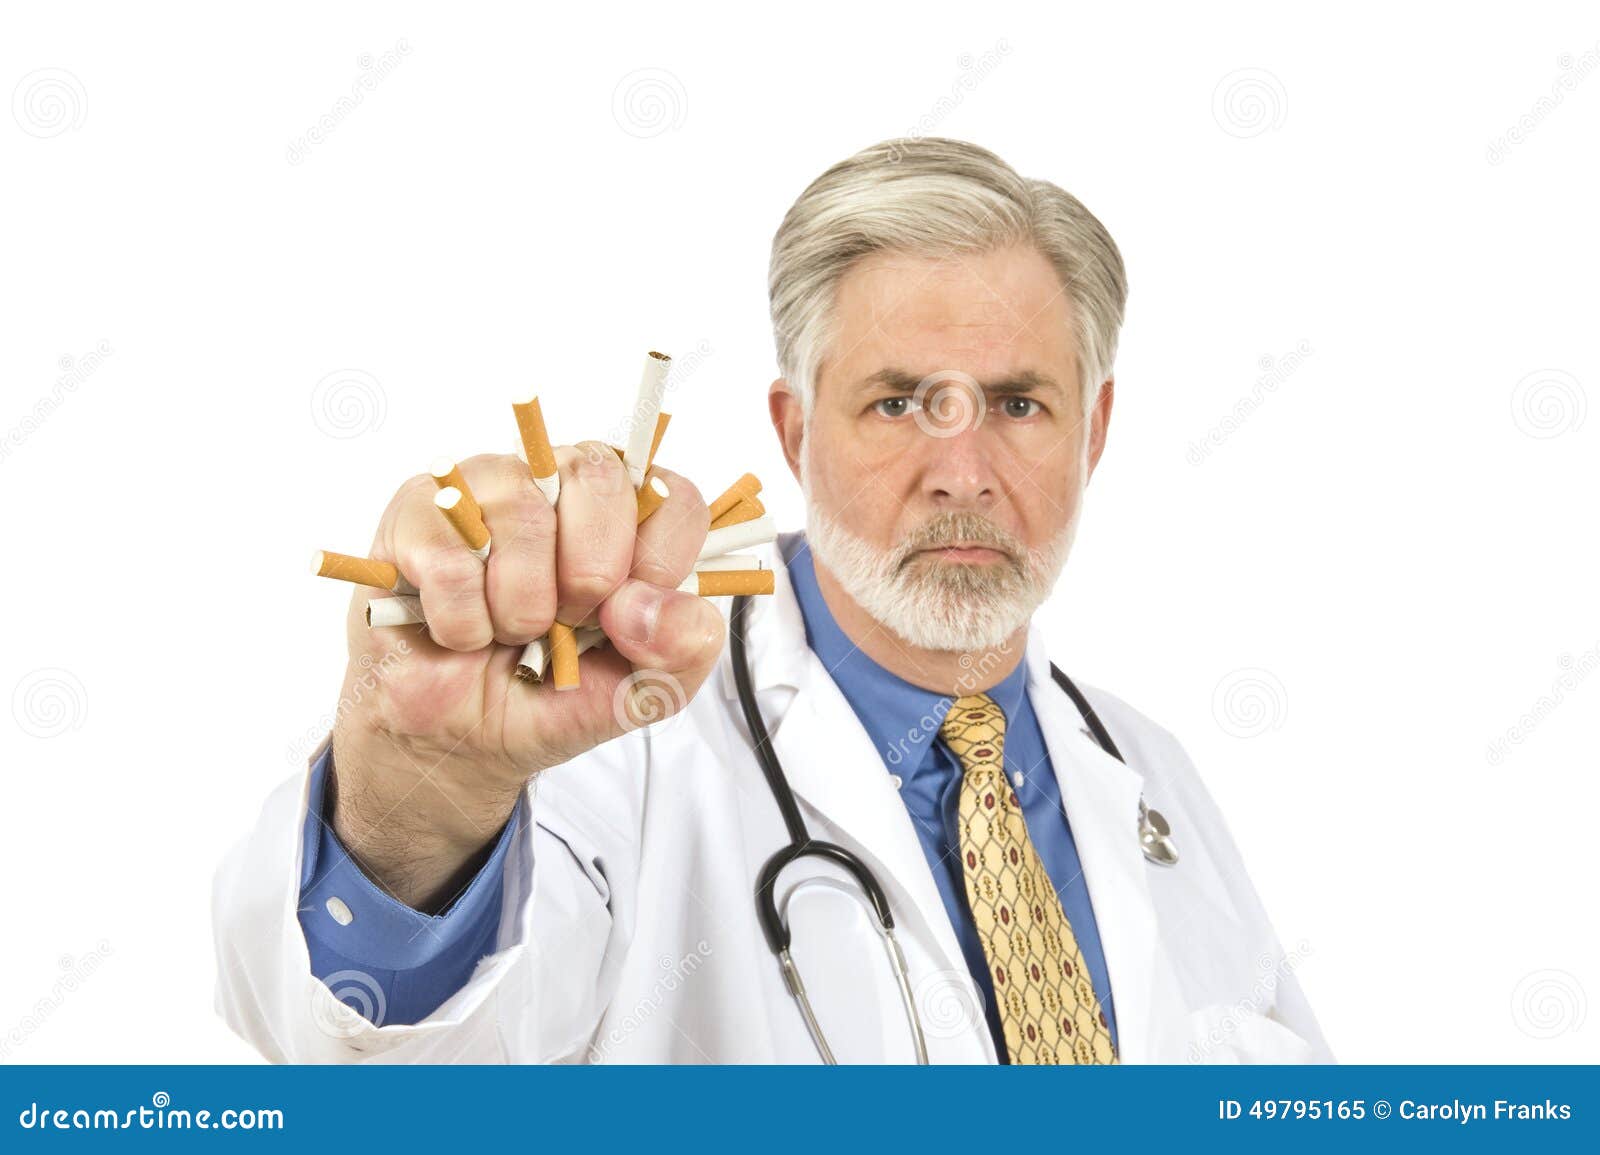 Бросить курить доктор. Врач с сигаретой. Врач и курильщик. Врачи против курения. Доктор с папиросой.